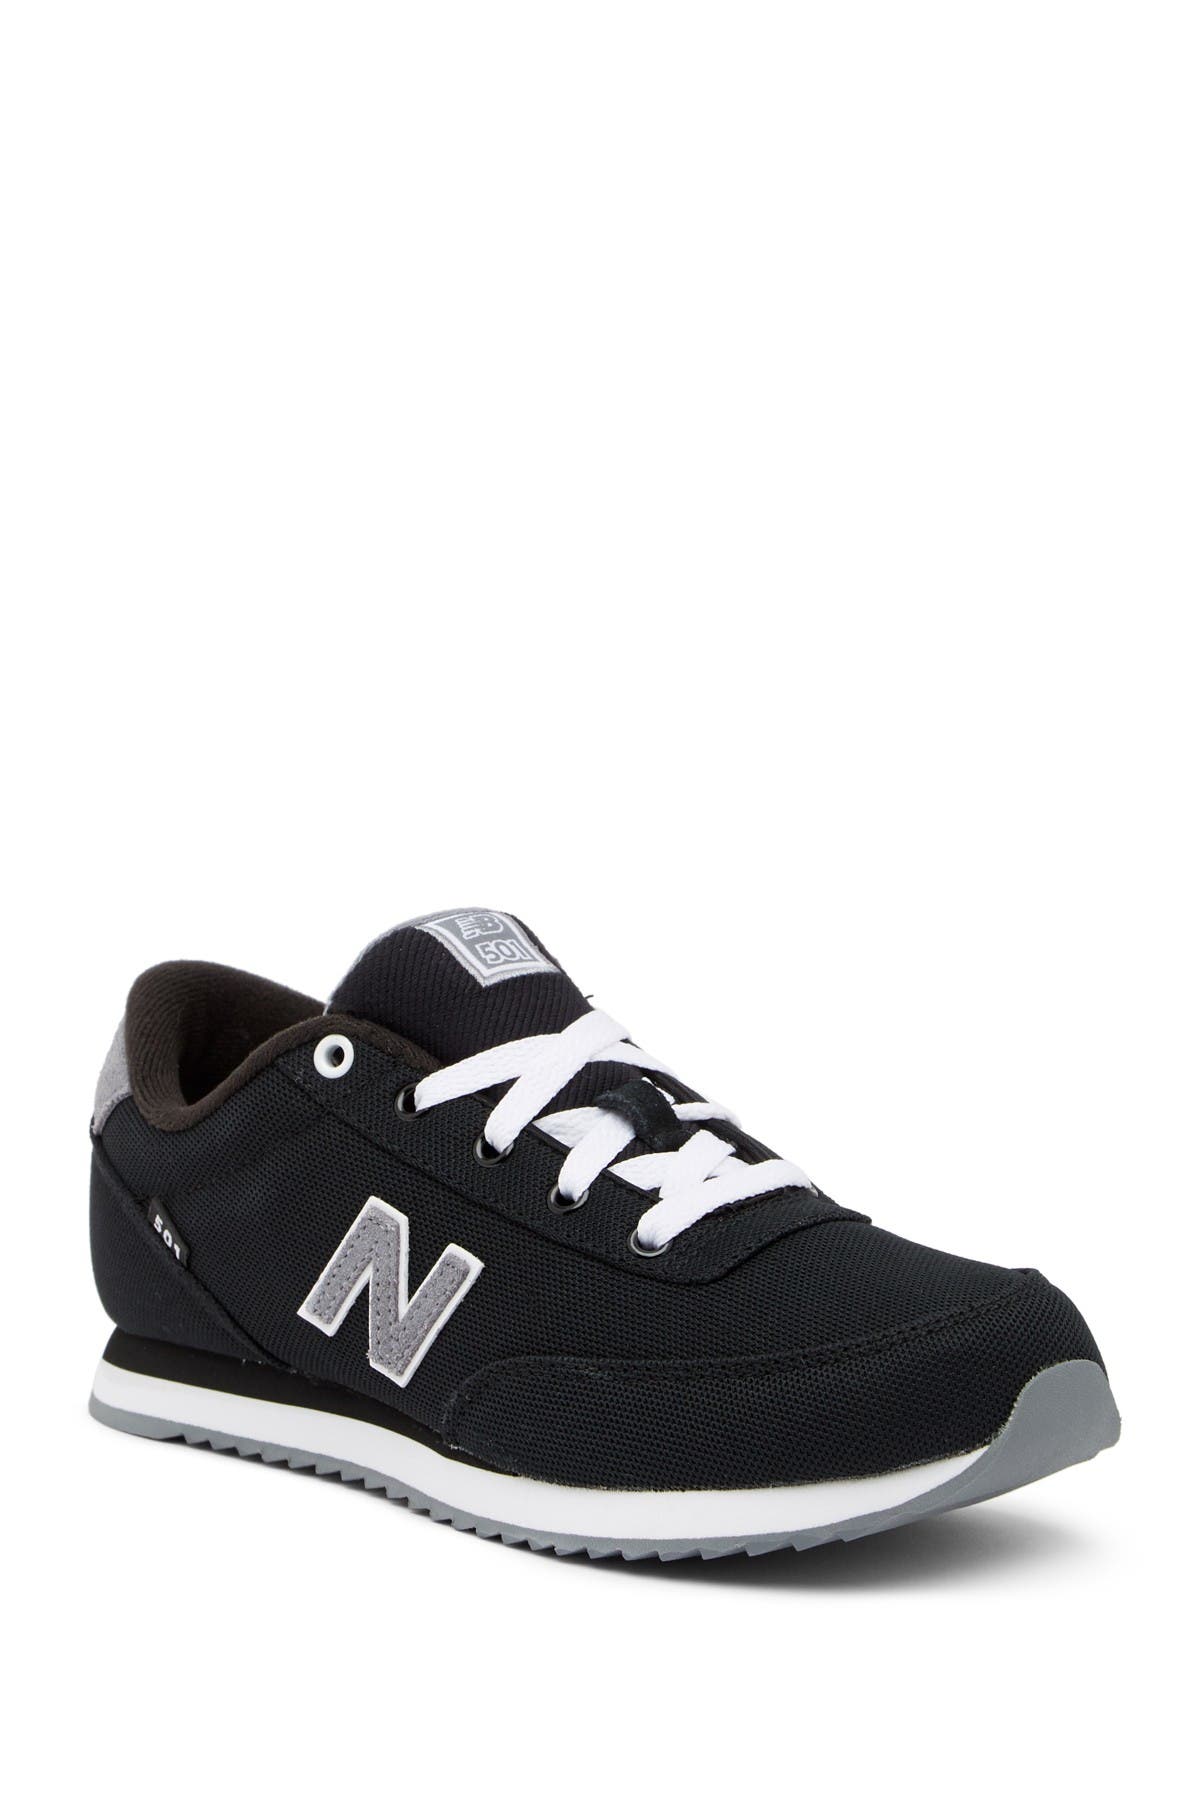 New Balance | 501 Sneaker - Wide Width 